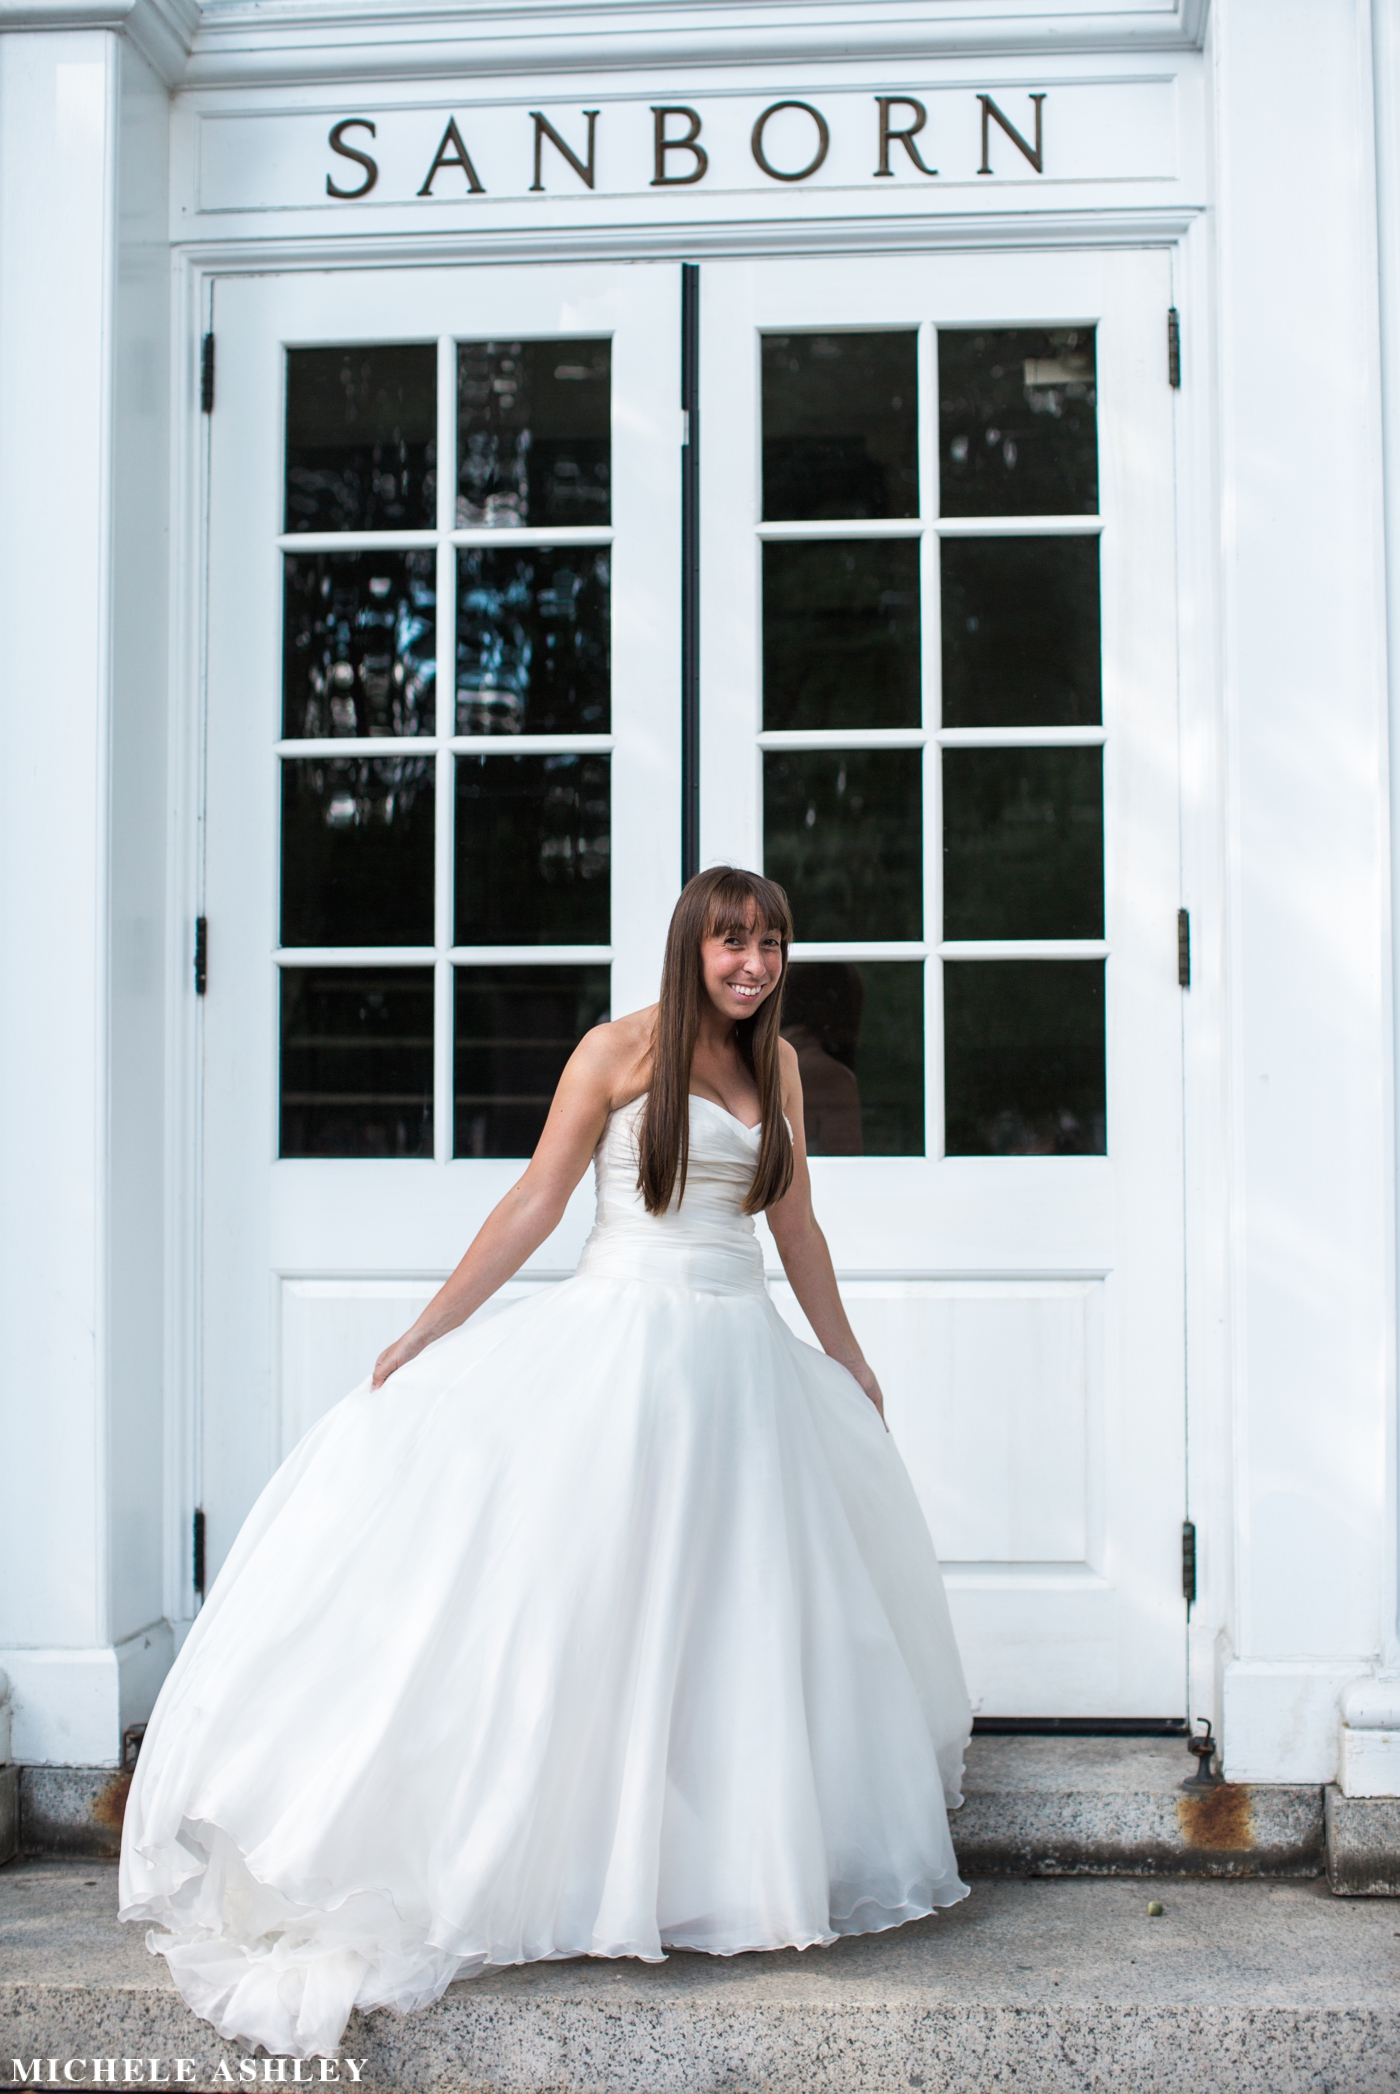 Dartmouth Wedding Photographer | Michele Ashley Photography